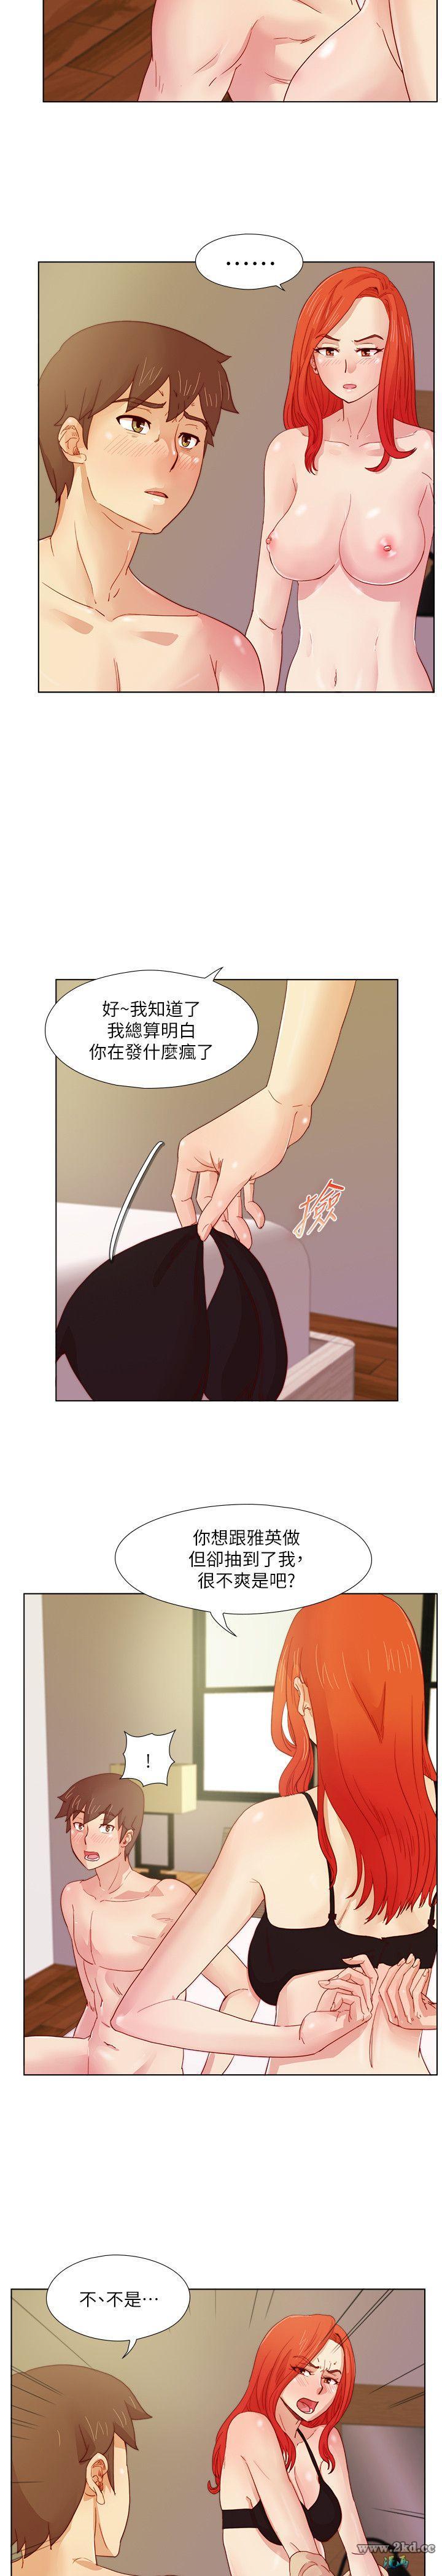 《荒淫同学会》漫画 第13话-在厕所偷偷来1